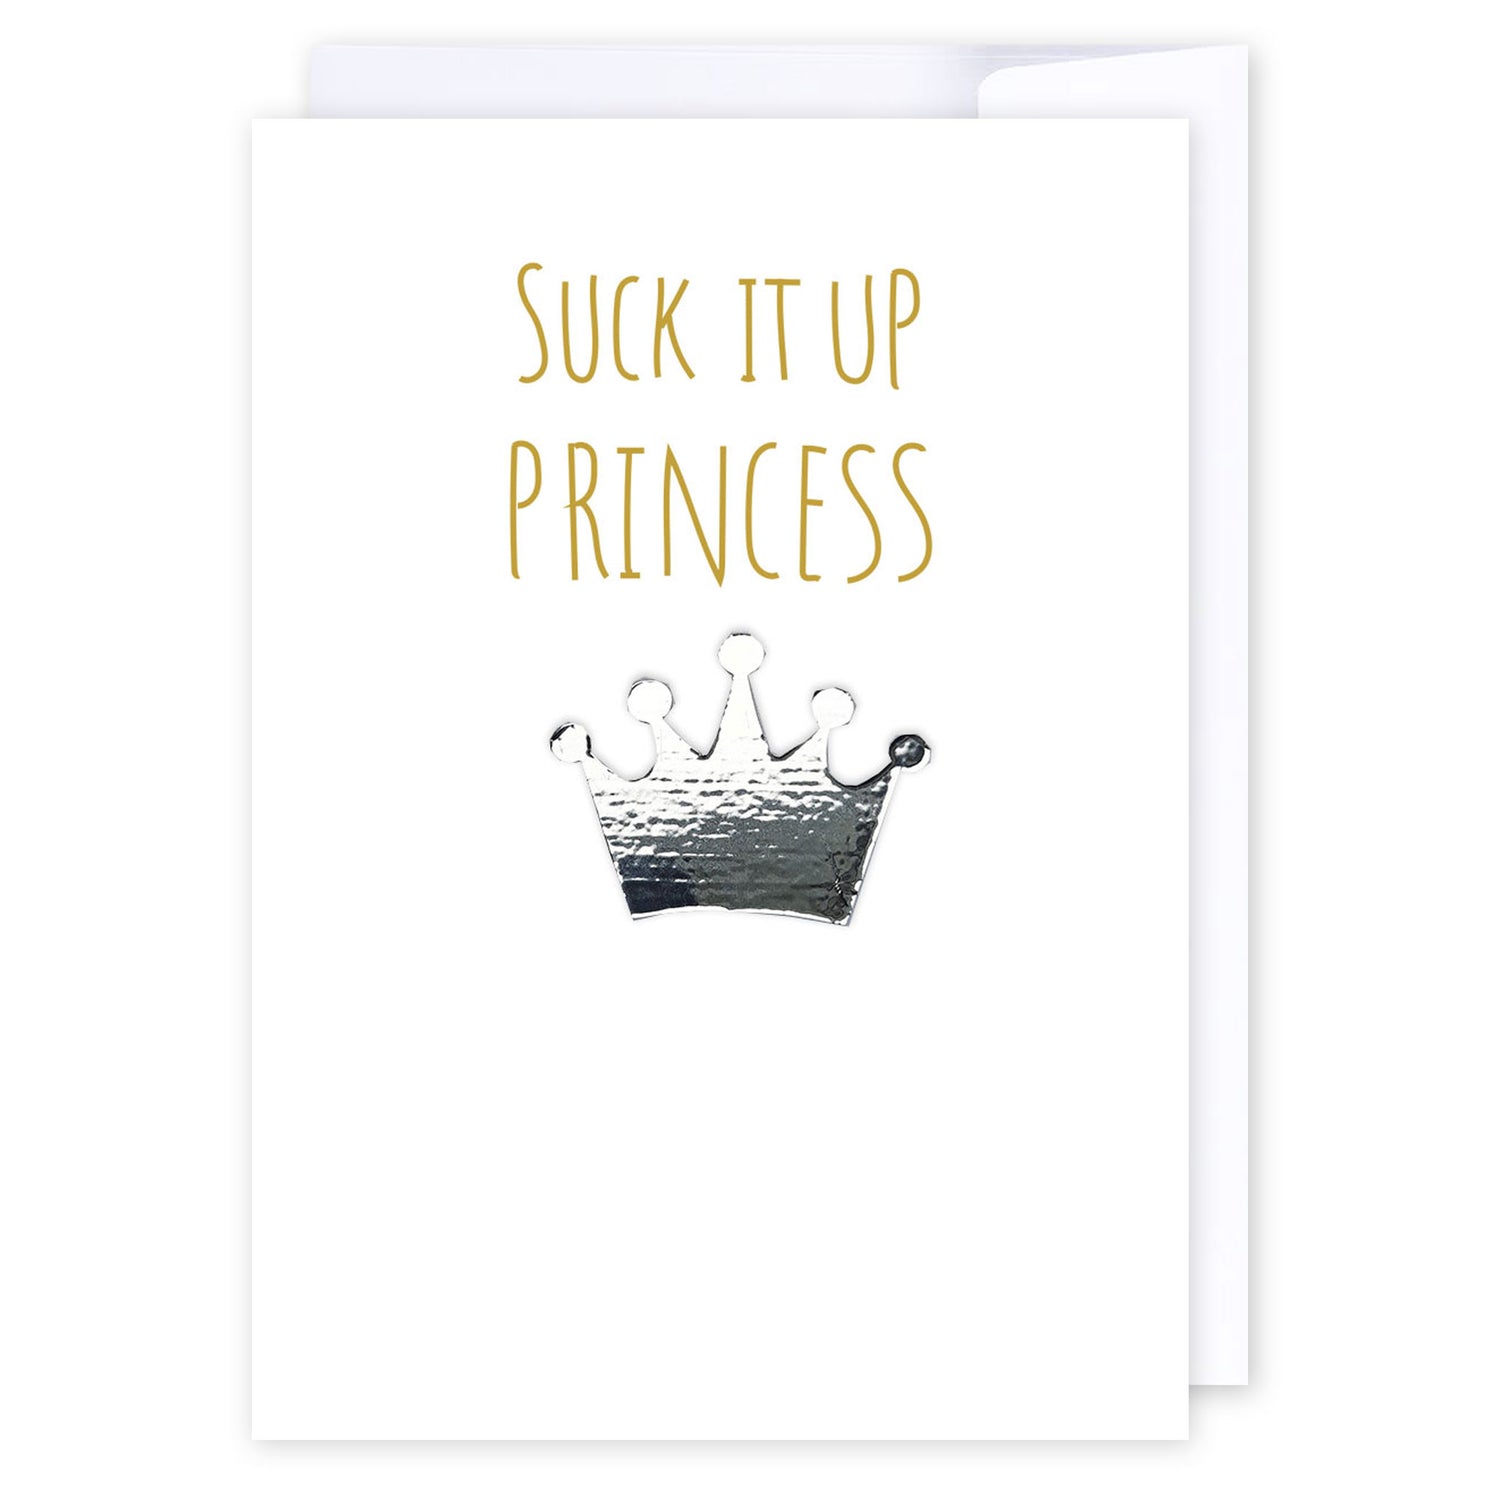 Suck it up princess